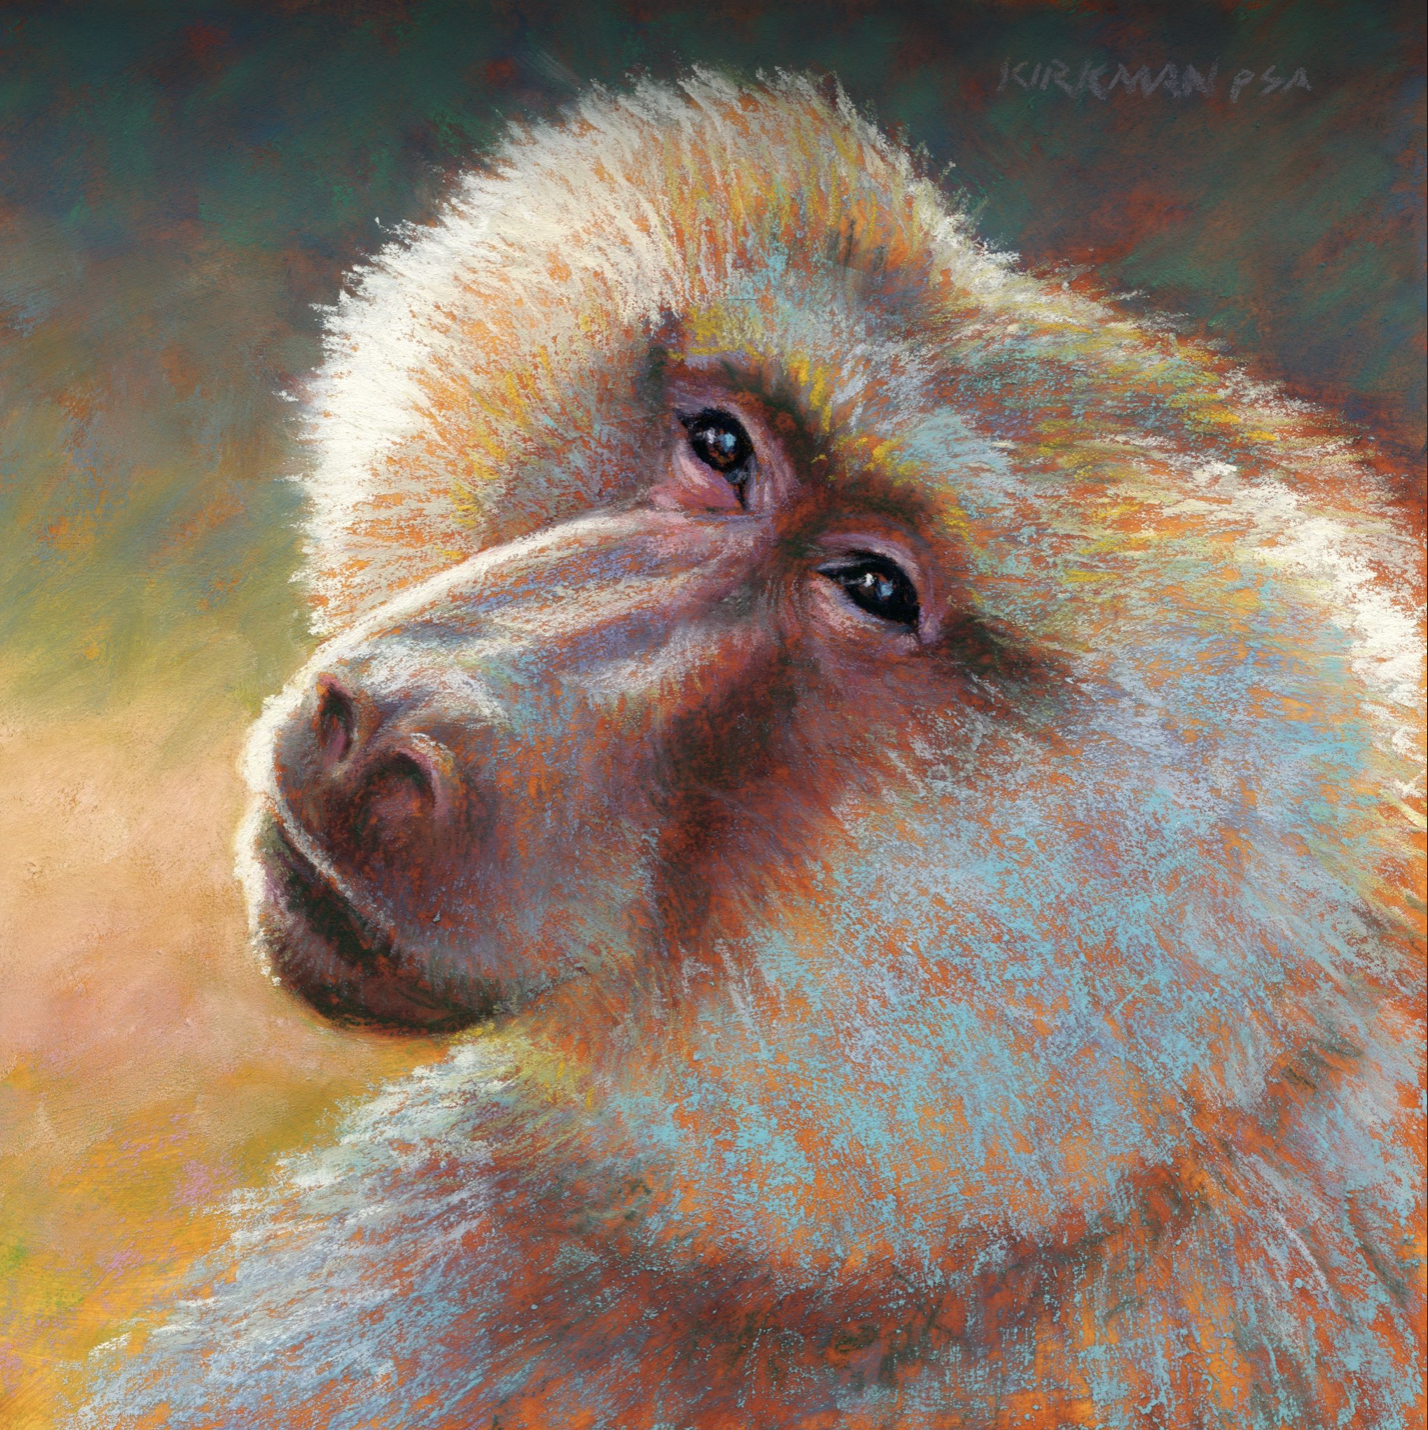 Monkey Day-Rita Kirkman, "B is for Baboon," pastel, 8 x 8 in.